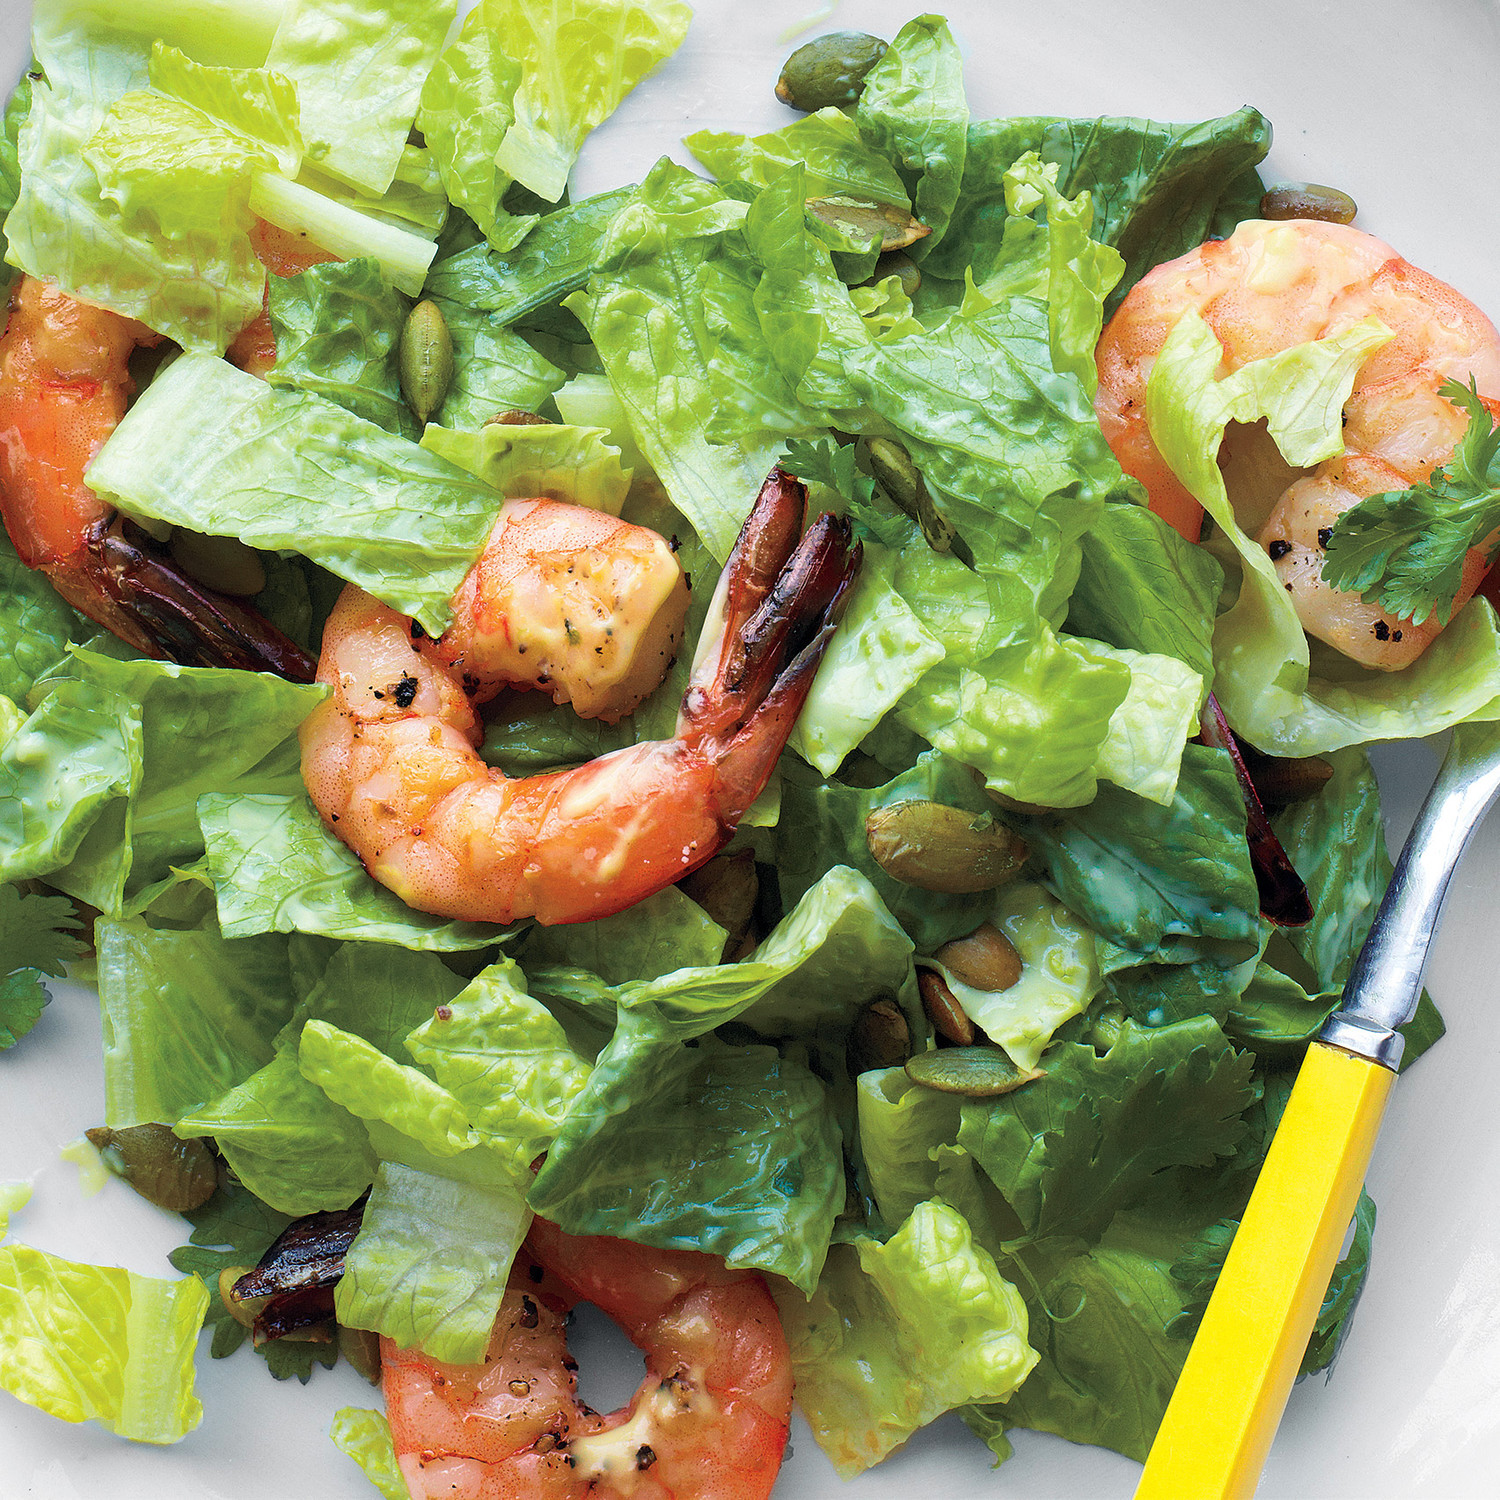 Shrimp Salad Ideas
 Shrimp Salad Recipes That Will Amp Up Your Greens